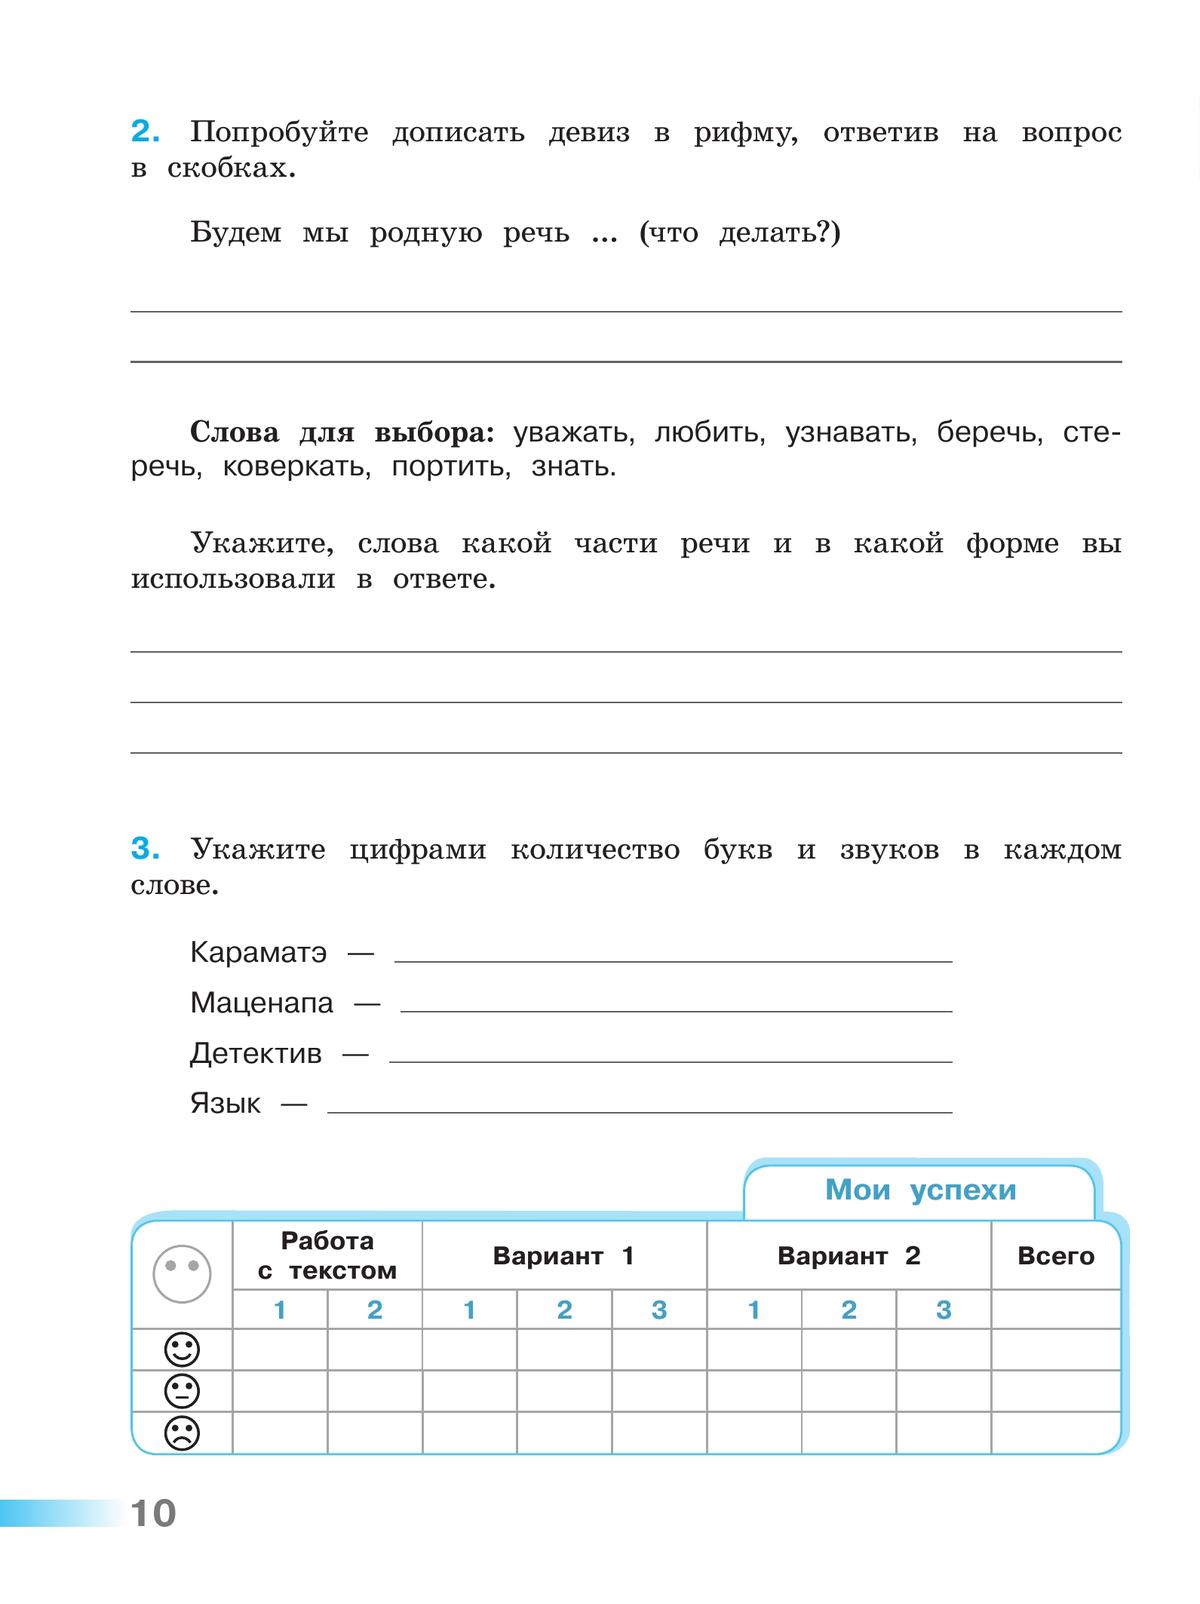 Русский язык. Тетрадь учебных достижений. 4 класс 3